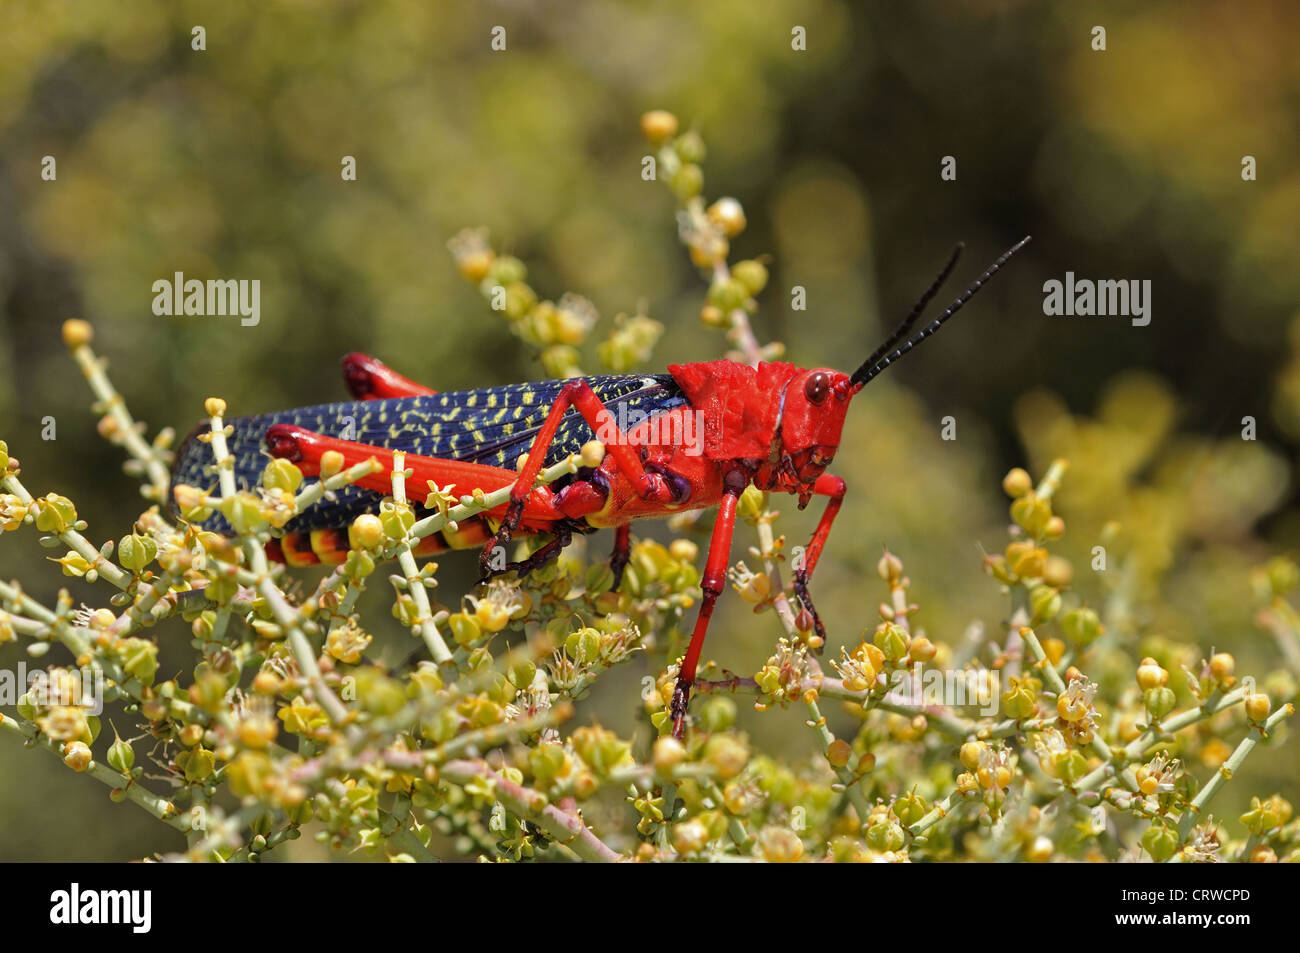 Common milkweed locust, Stock Photo